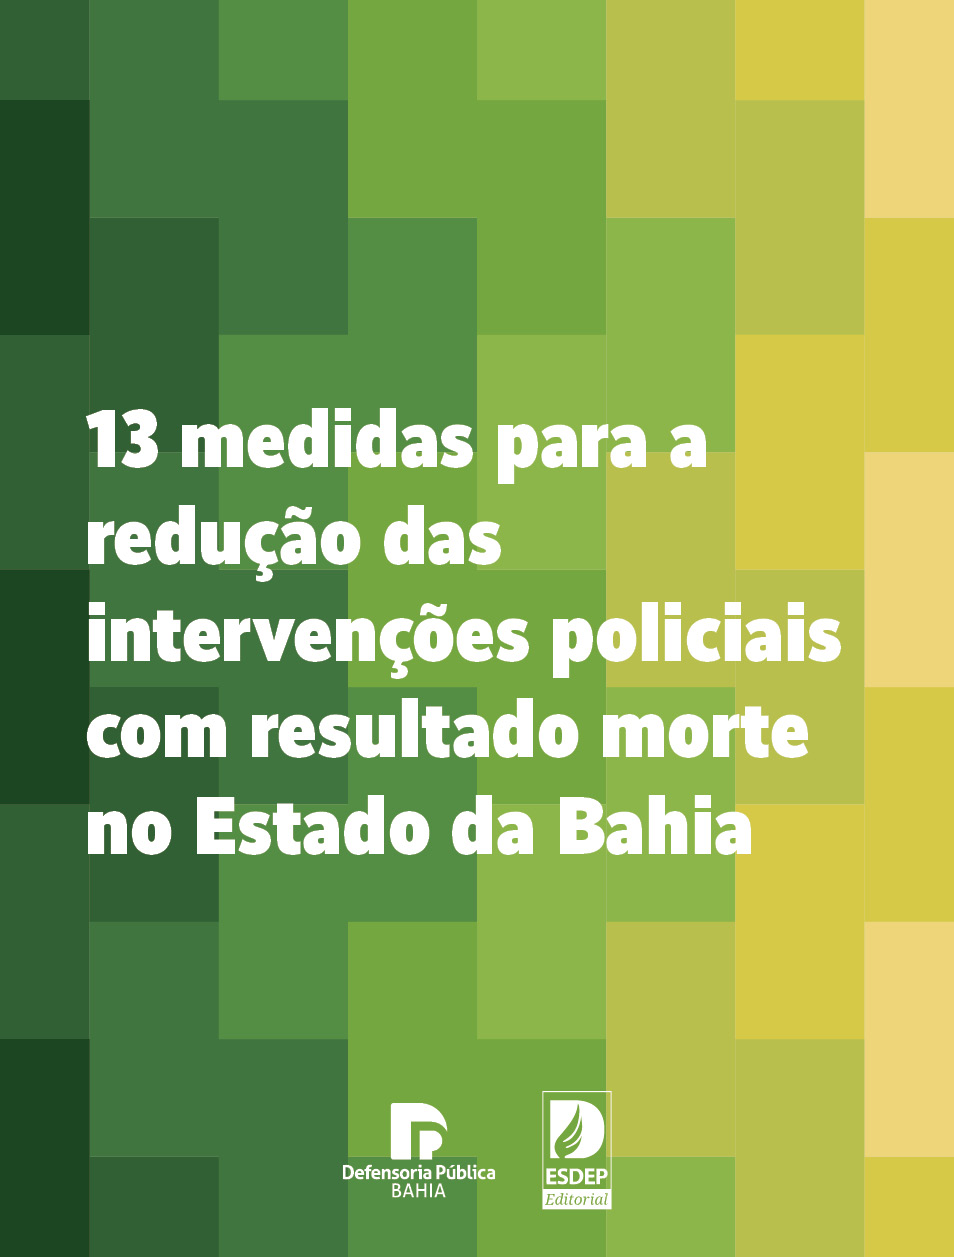 13 medidas para a redução das intervenções policiais com resultado morte no Estado da Bahia